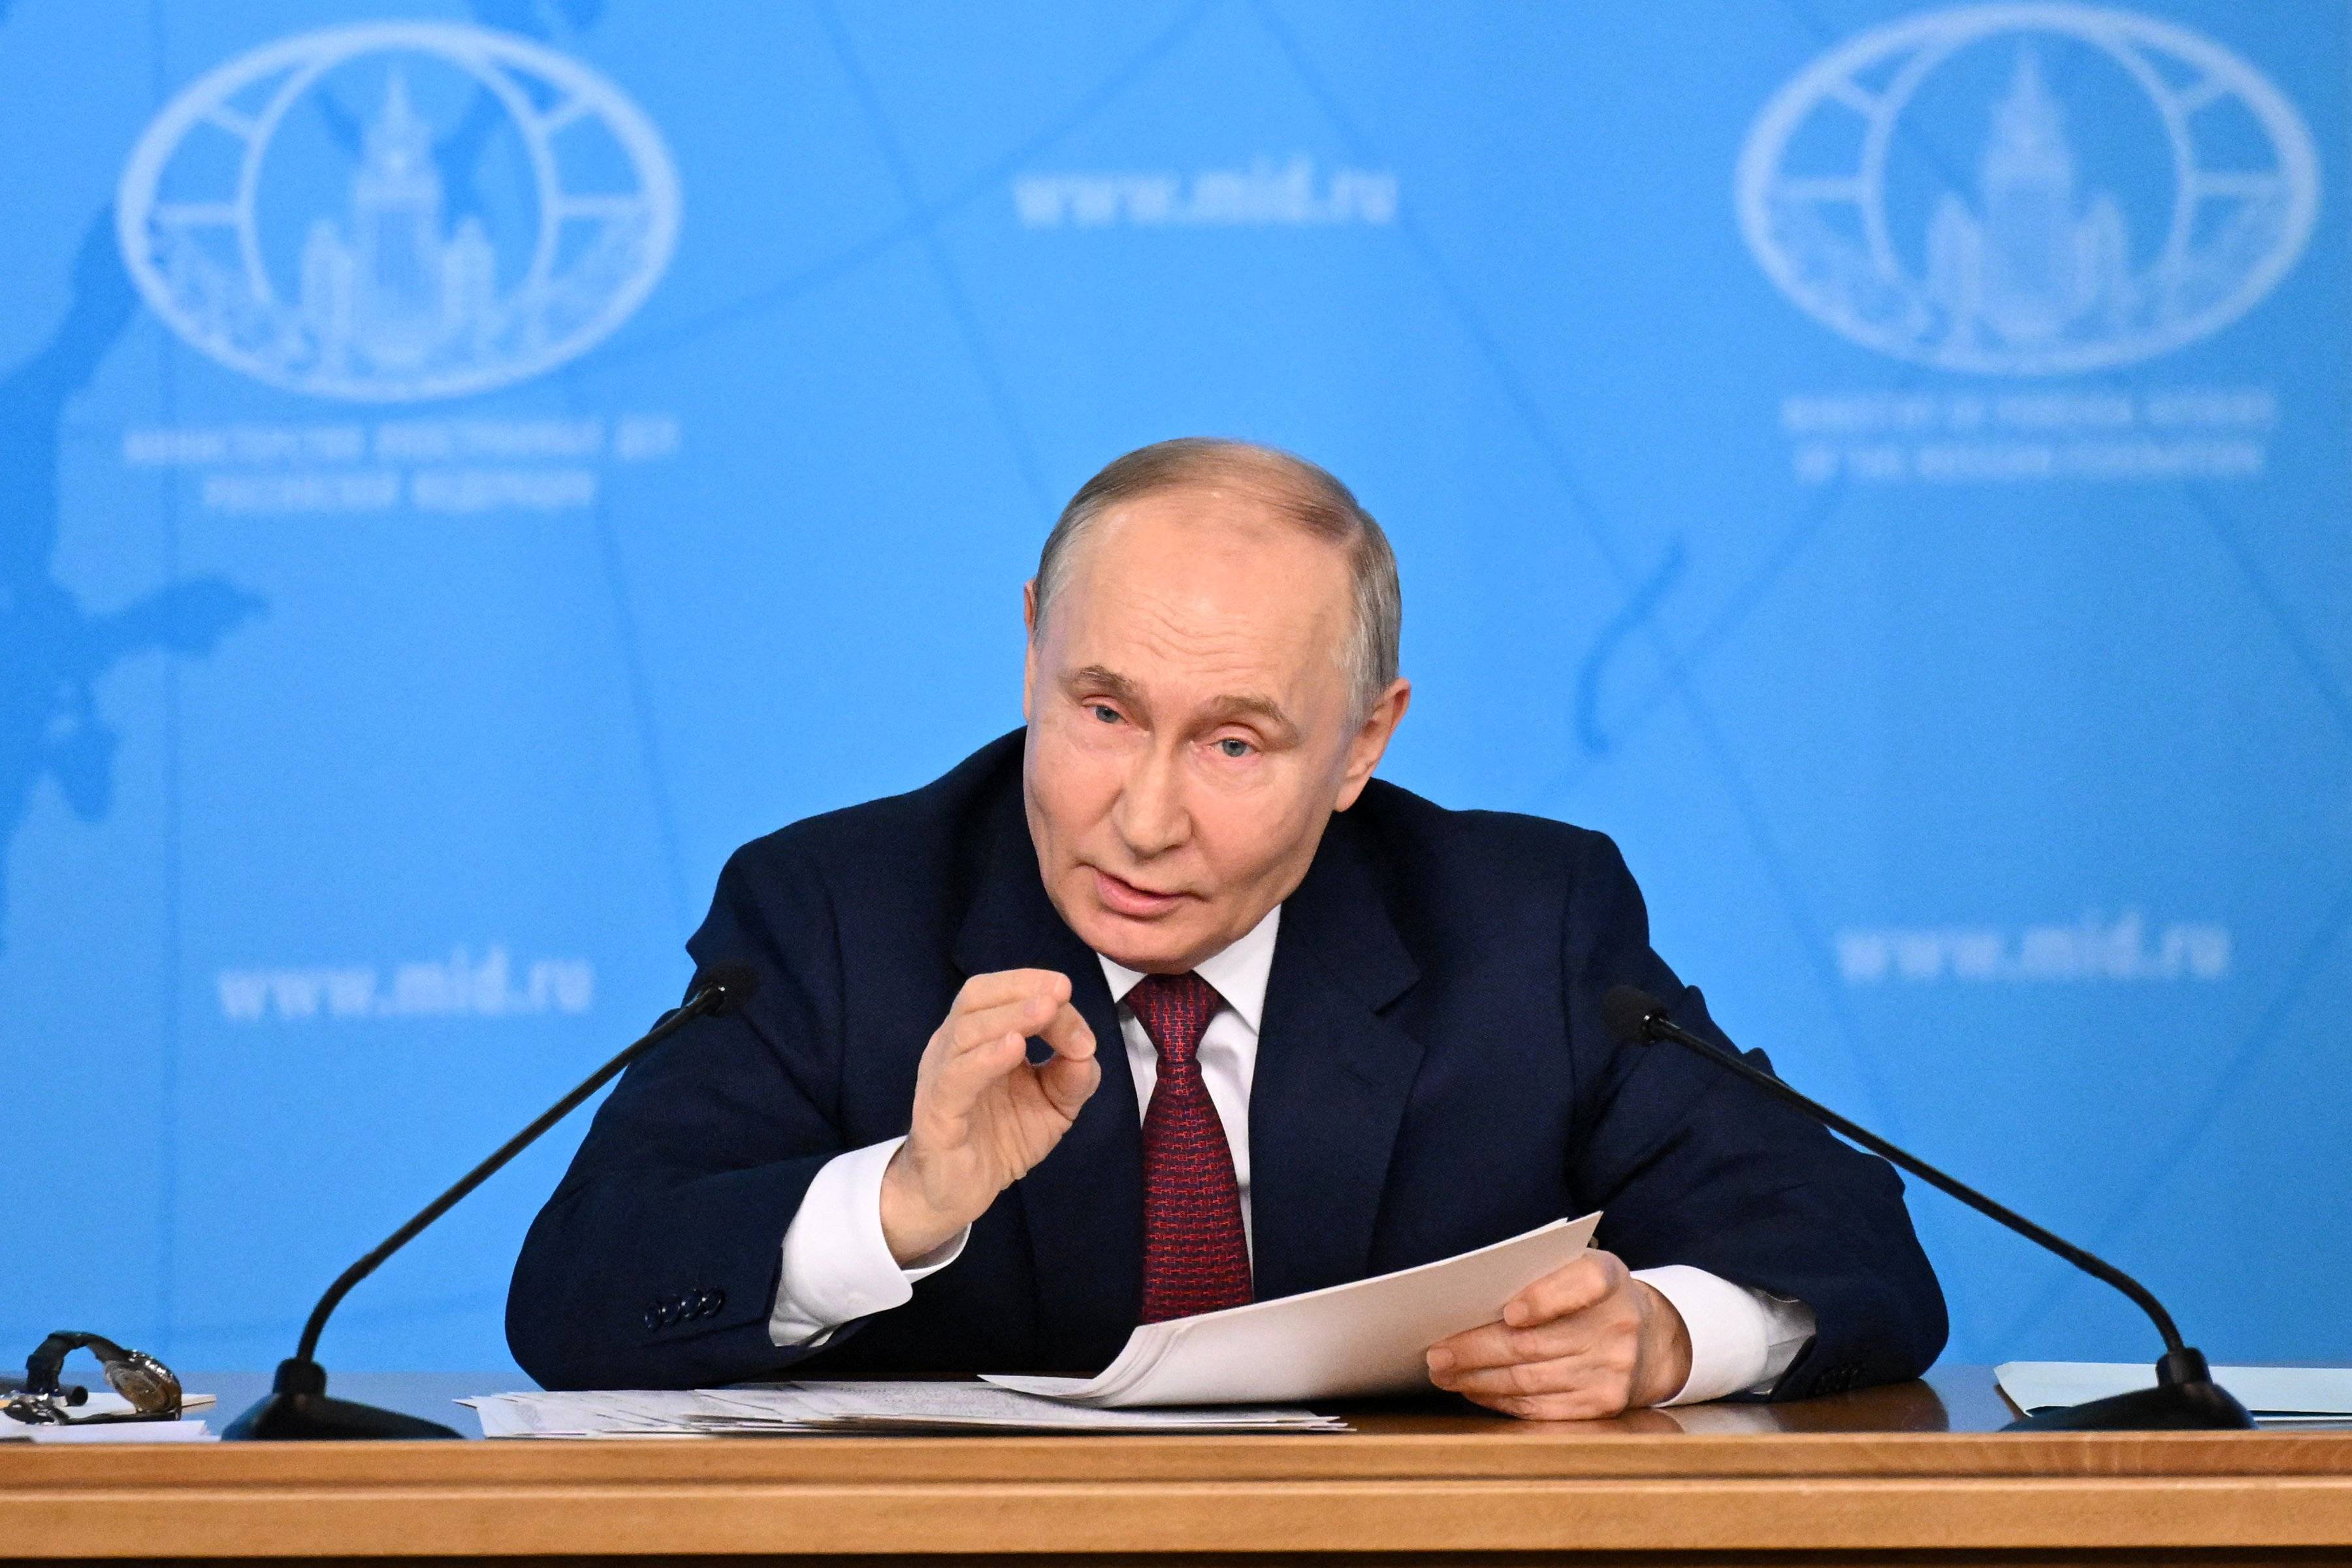 Władimir Putin. Łysiejący, krępy mężczyzna w garniturze i białej koszuli, siedzi przy stole, gestykuluje jedną dłonią.